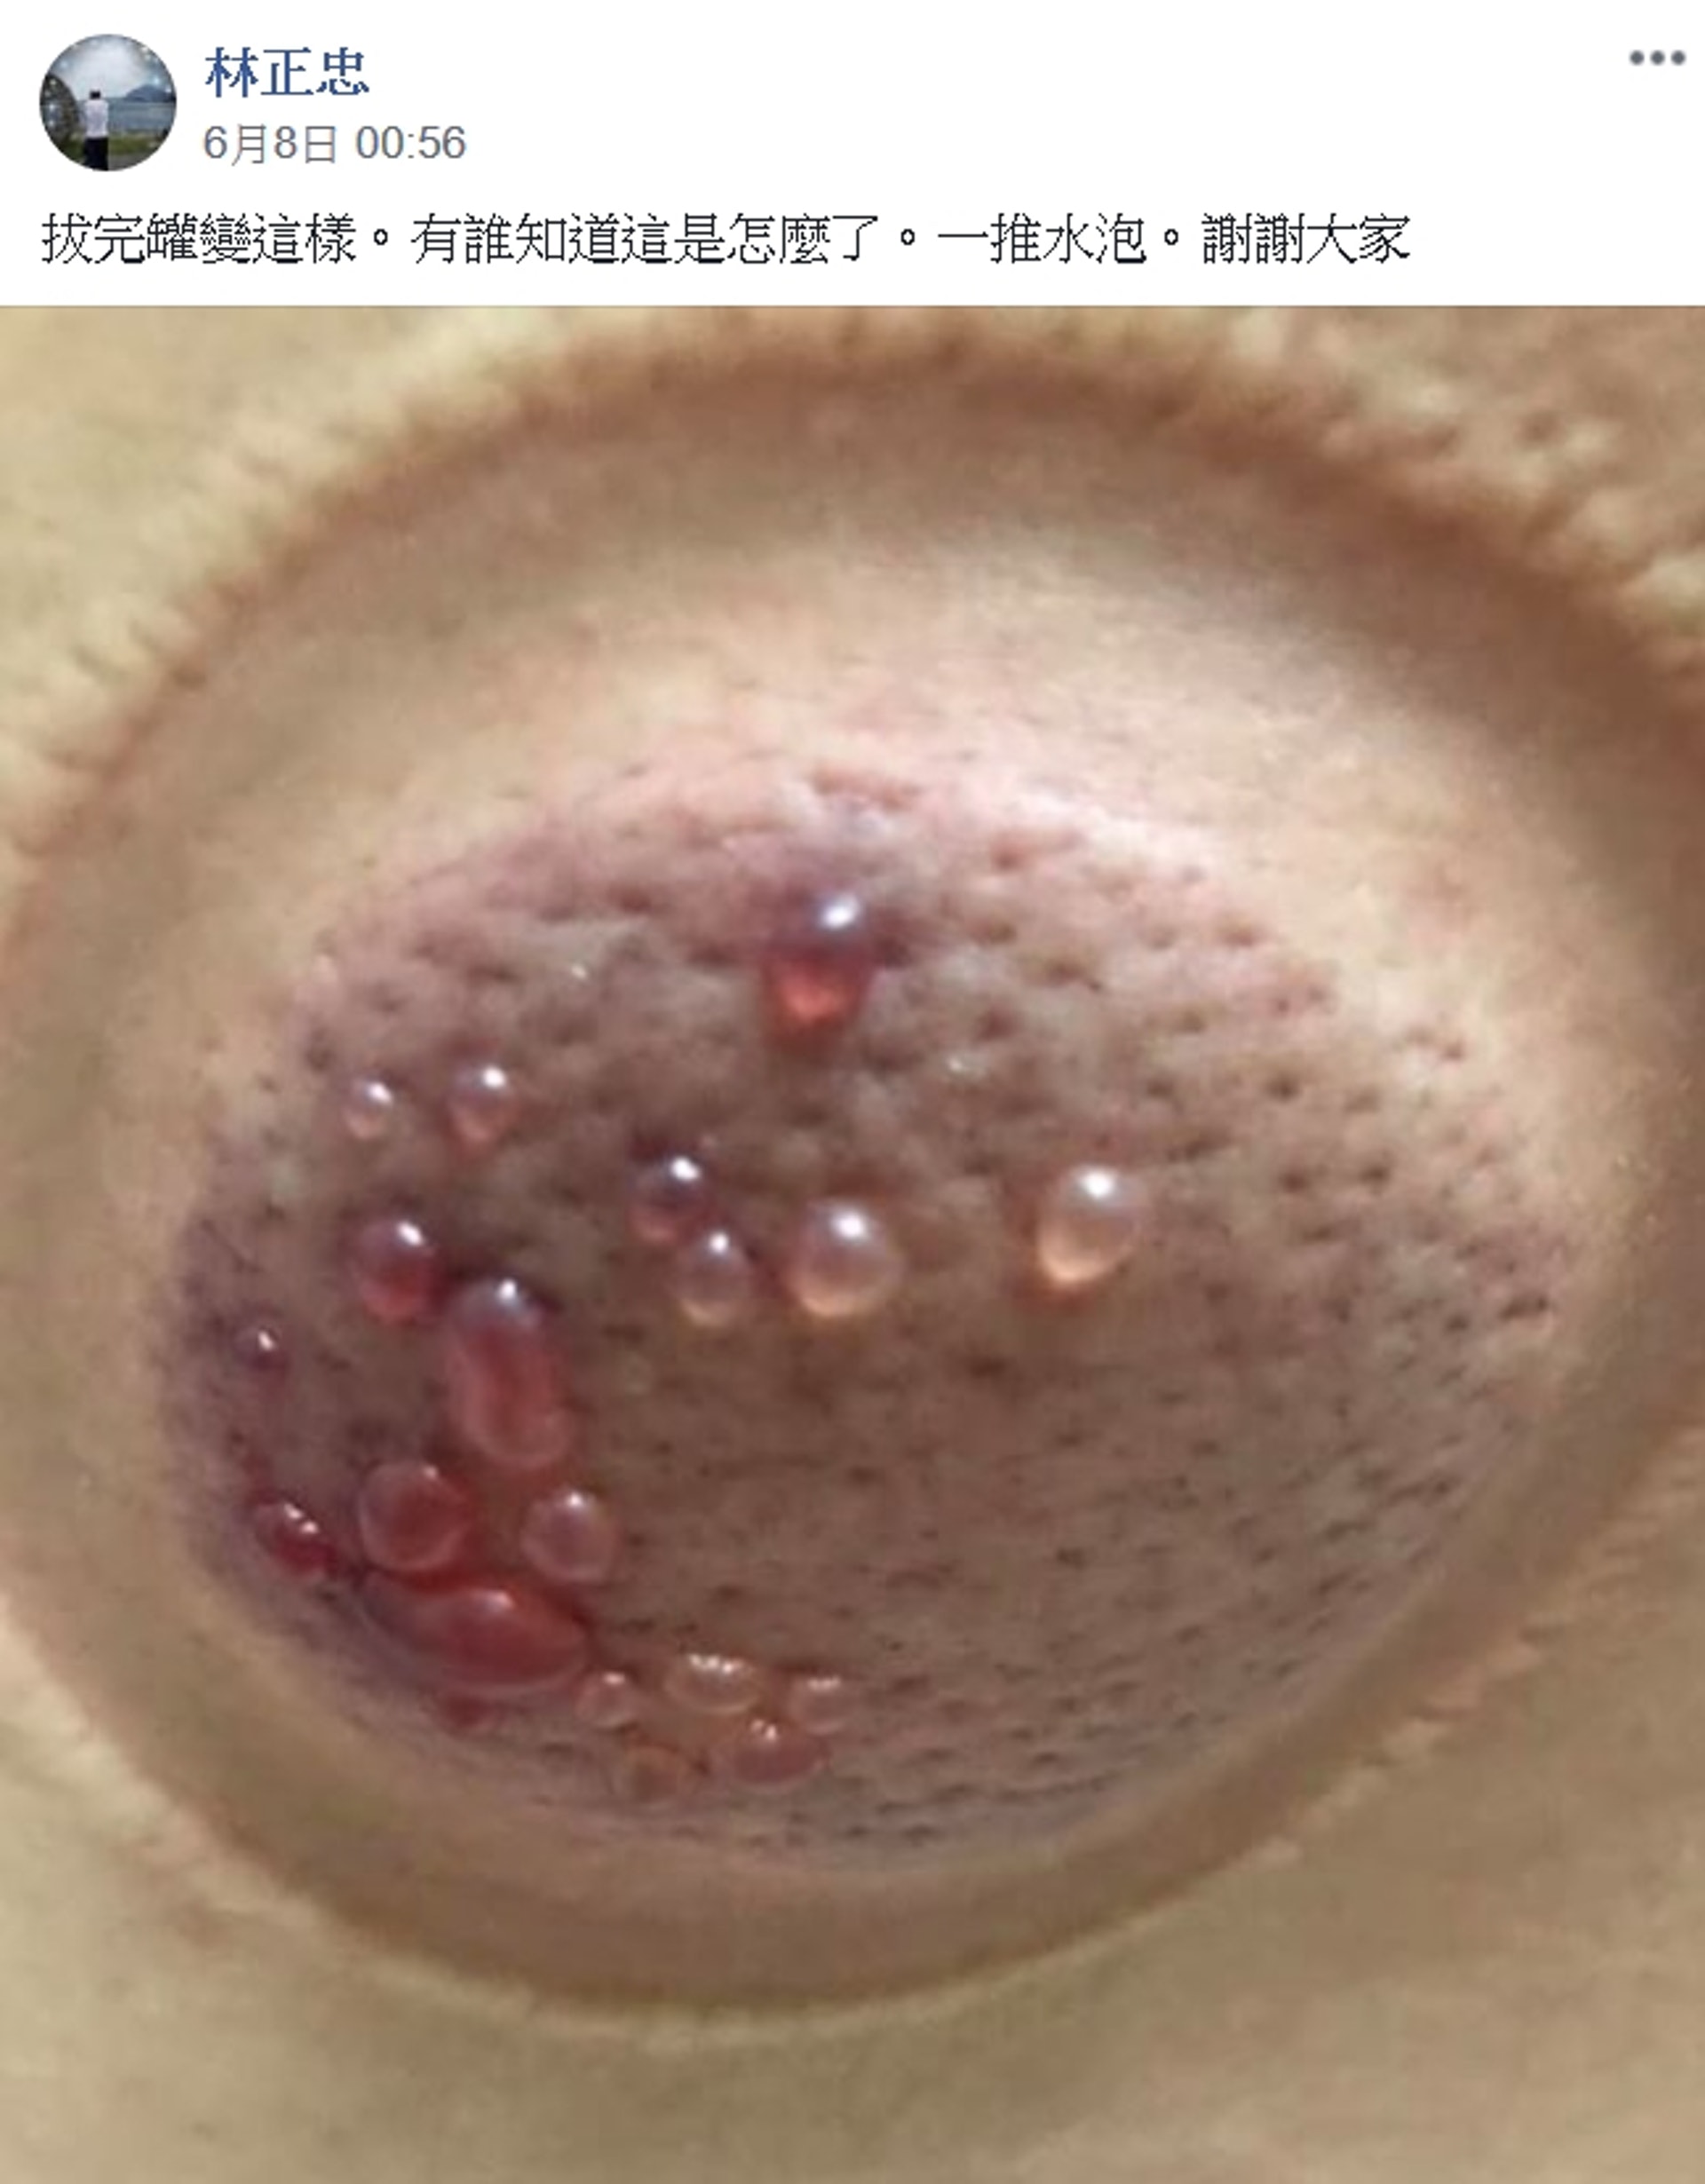 有台灣網友上傳一張拔罐後皮膚冒水泡的駭人照片。（Facebook@爆系知識家）